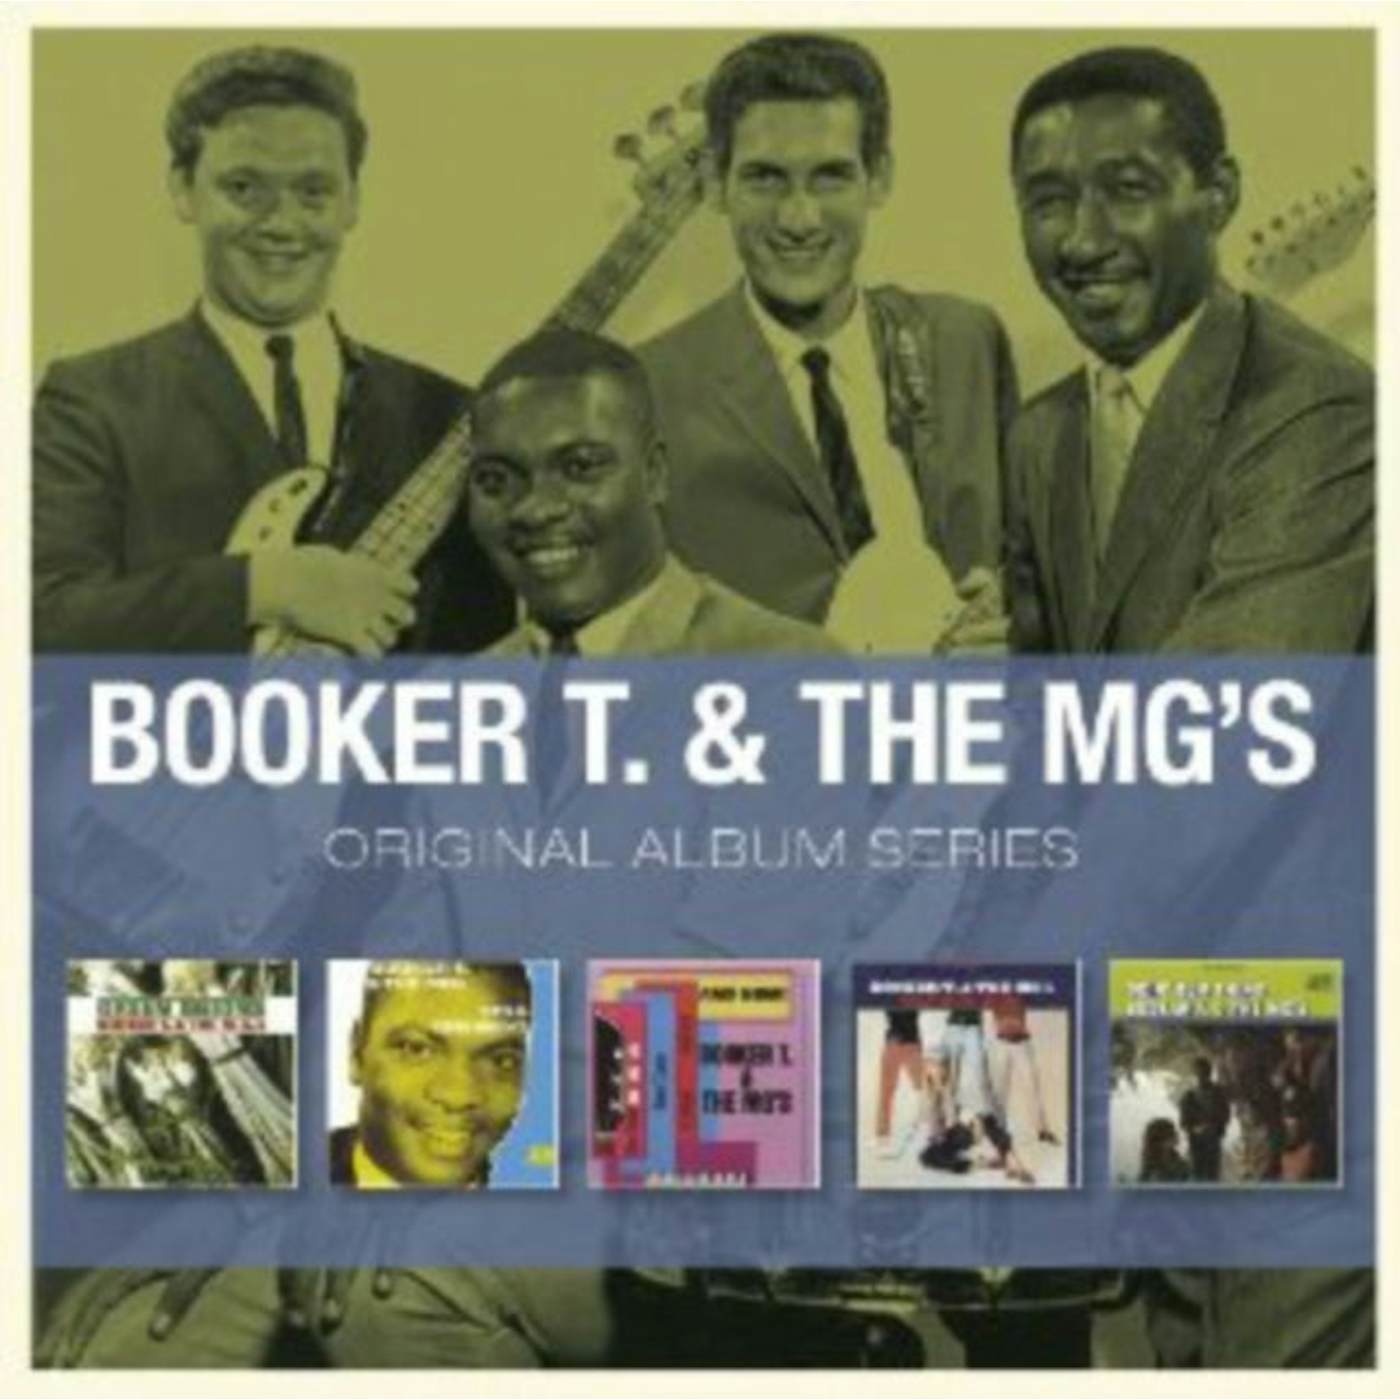 Booker T. & The M.G.'S CD - Original Album Series